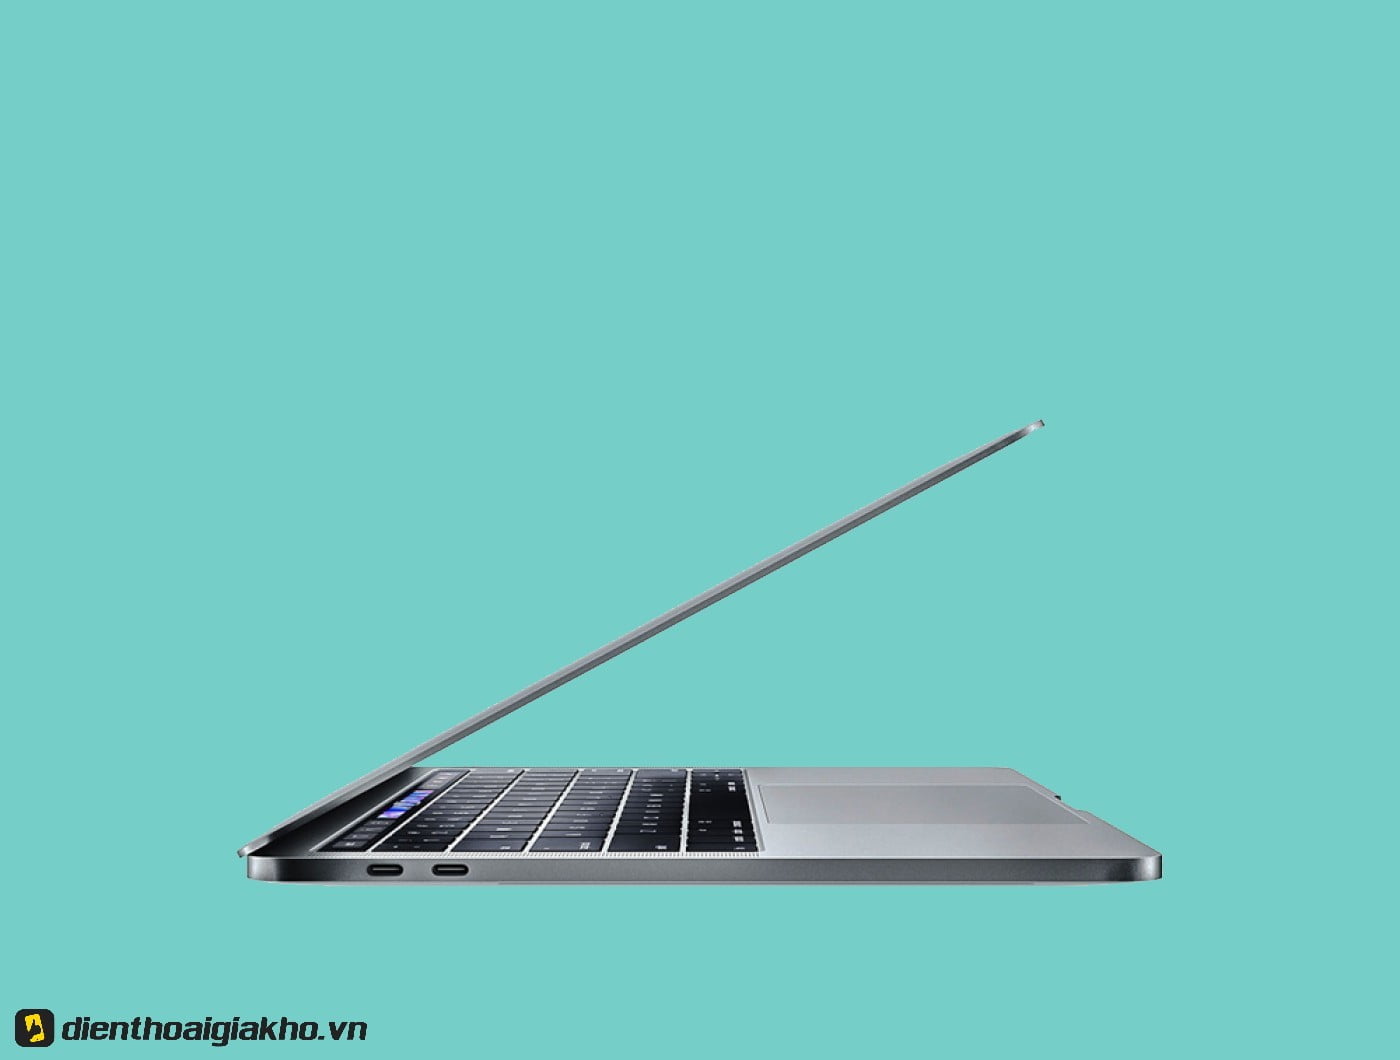 MUHP2 - MacBook Pro 2019 13 Inch 256GB Gray có thực sự là chiếc laptop dành cho bạn?